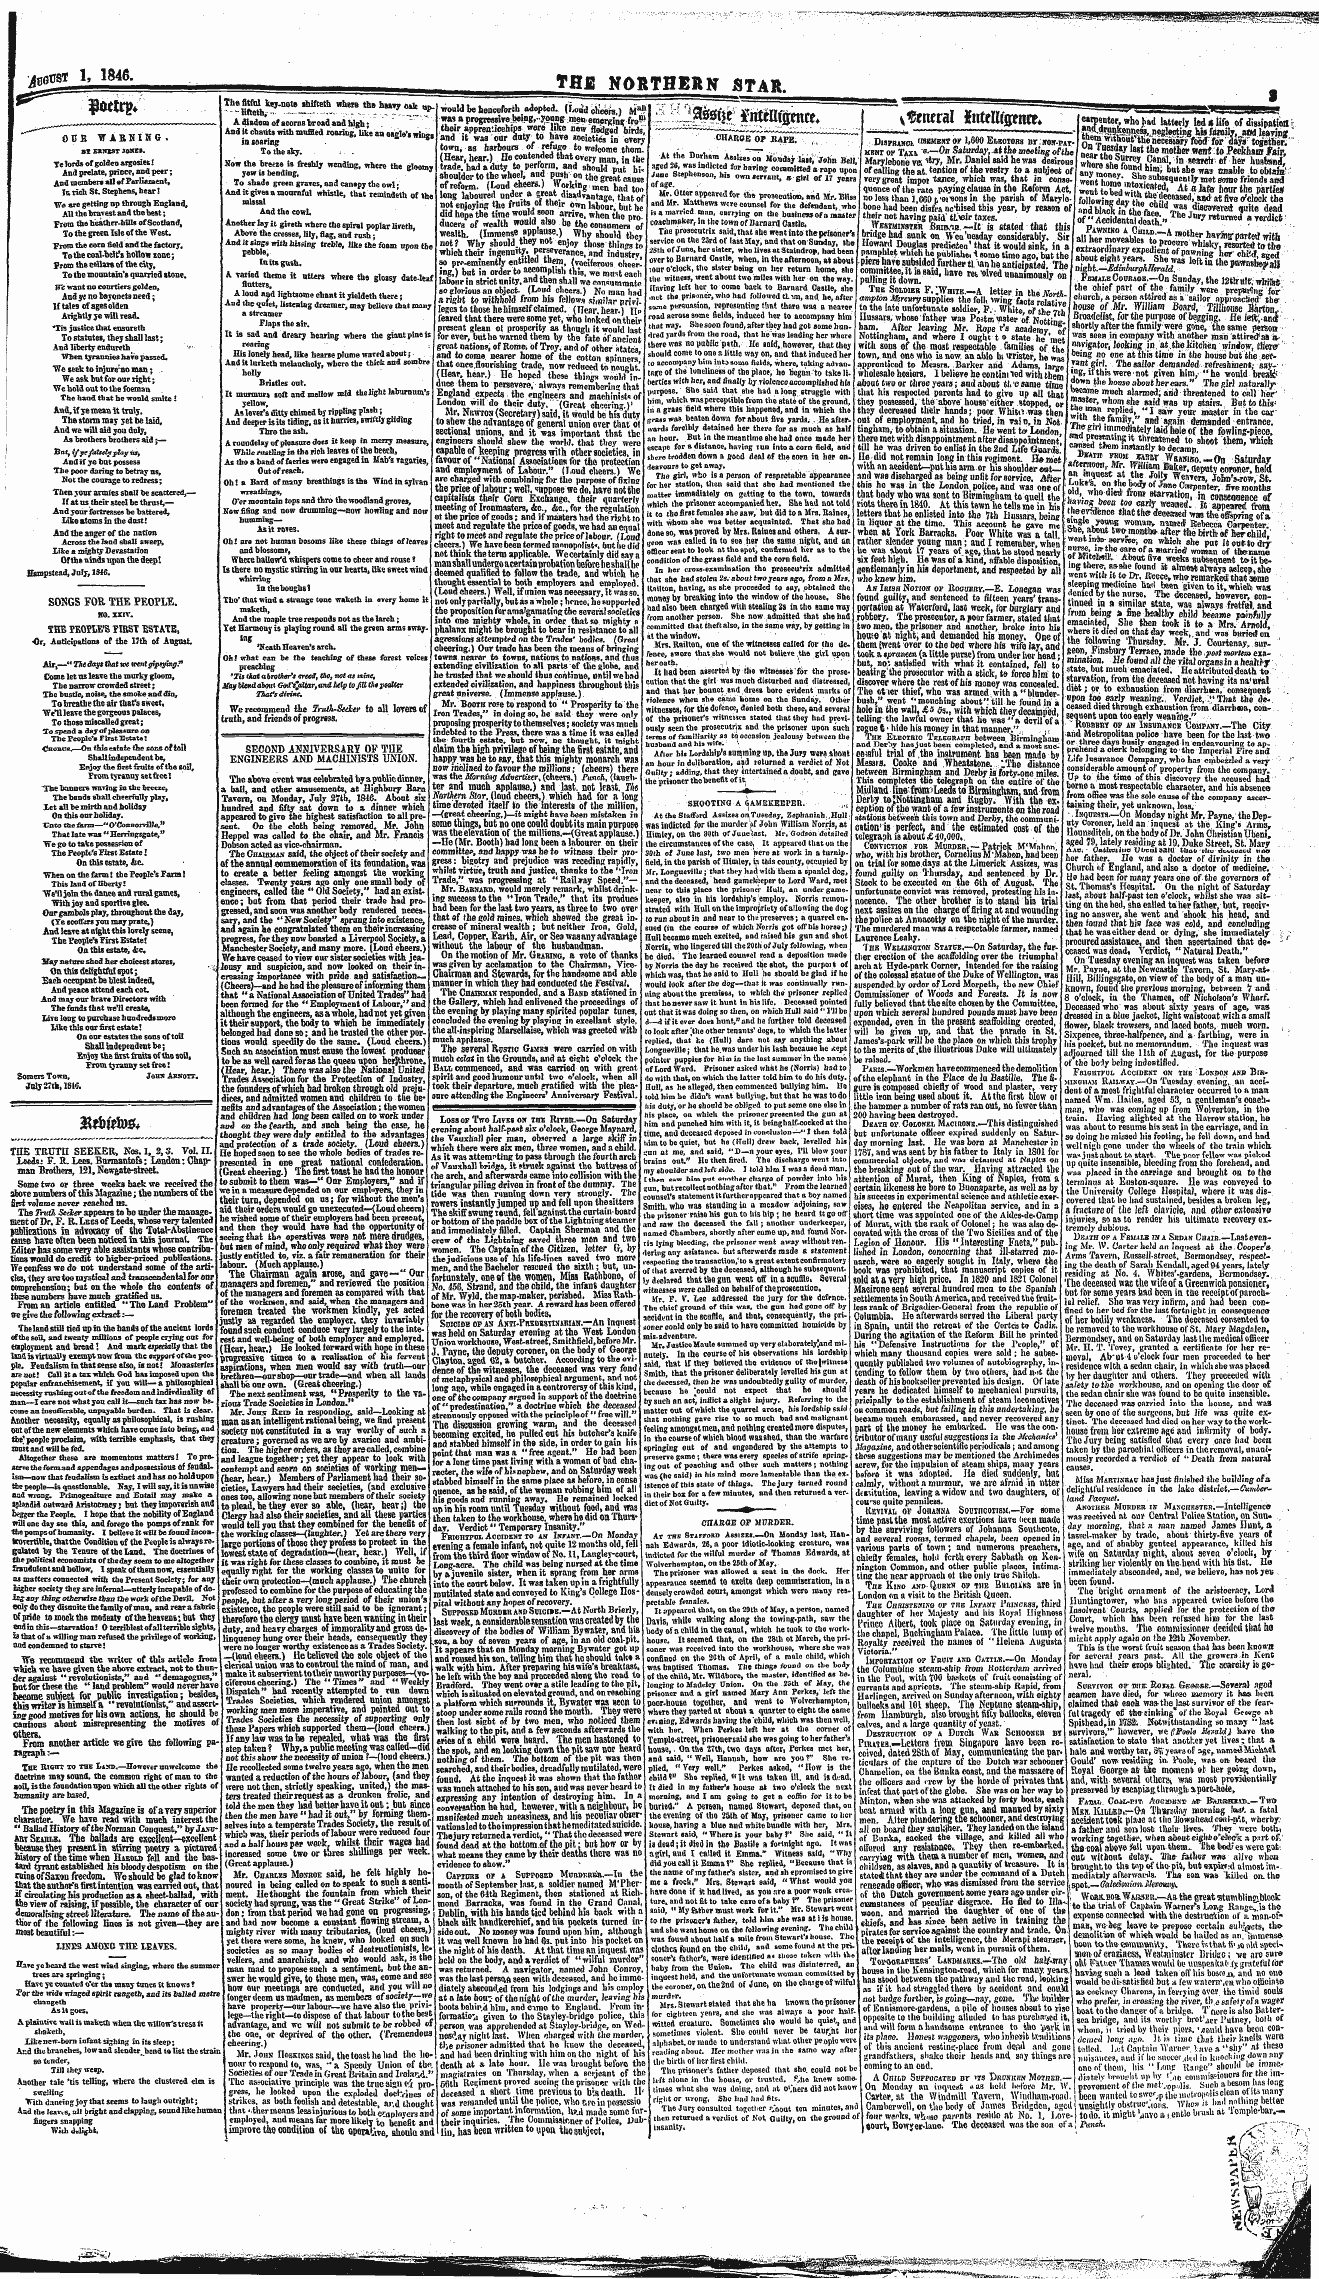 Northern Star (1837-1852): jS F Y, 2nd edition - Mwm